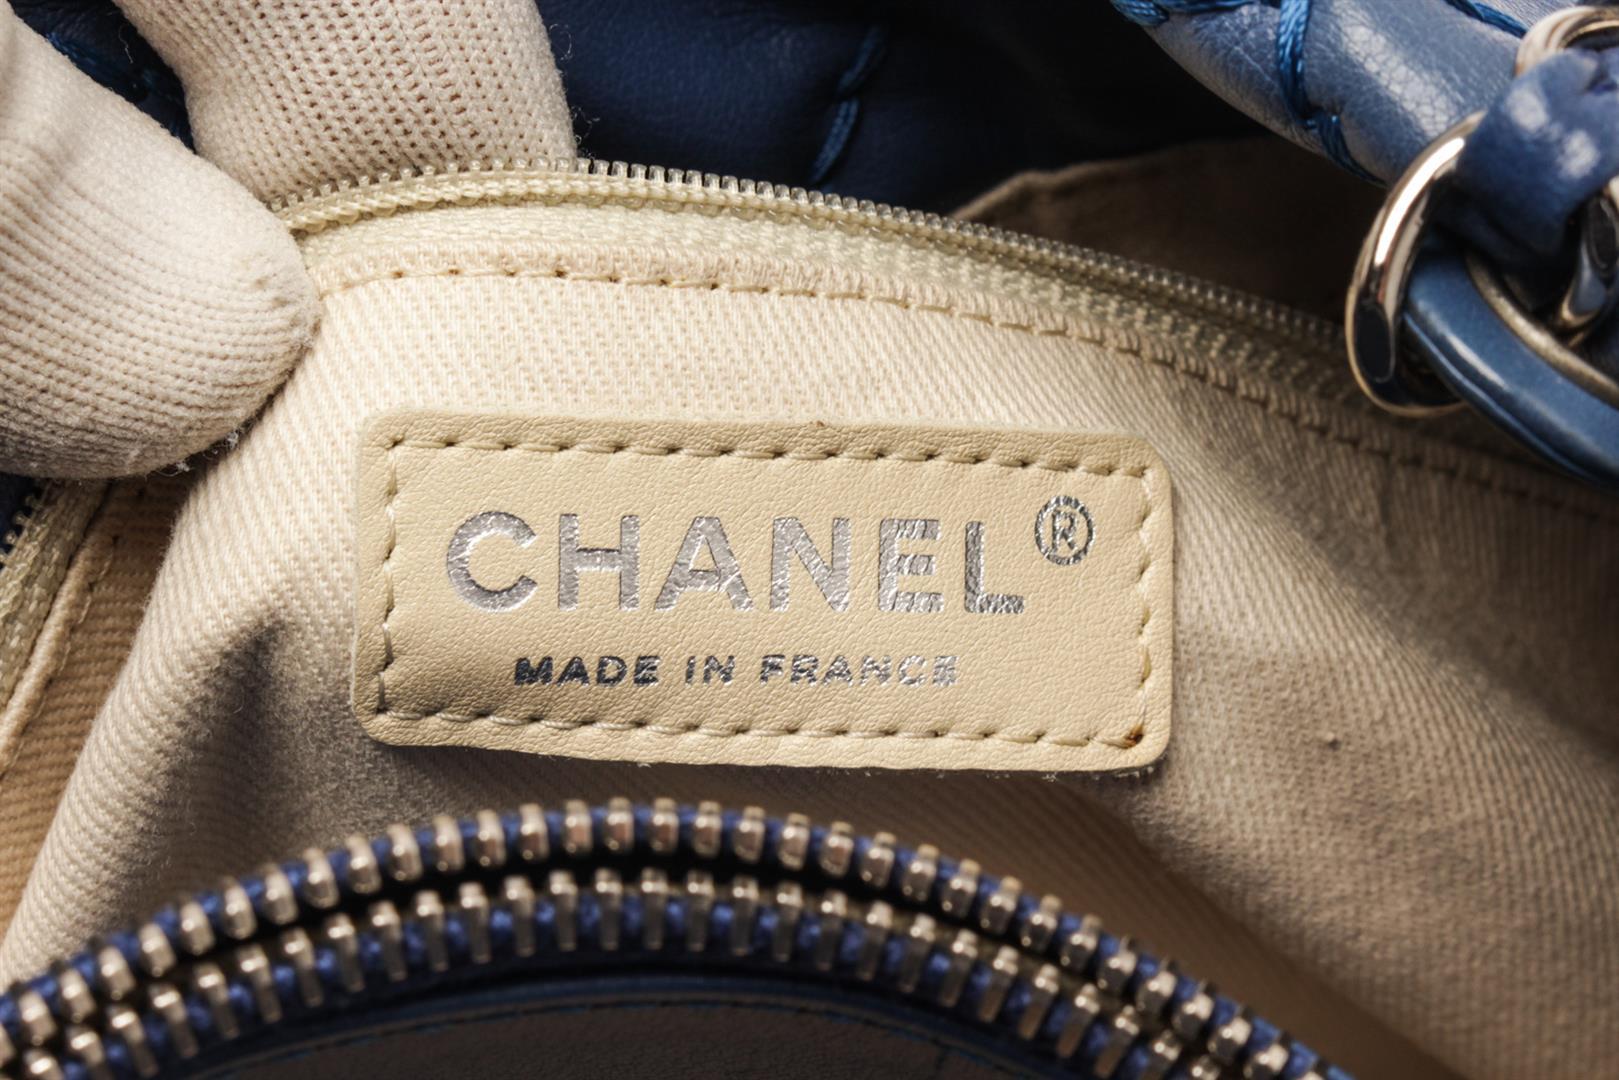 Chanel Navy Blue Quilted Leather Boy Camera Shoulder Bag